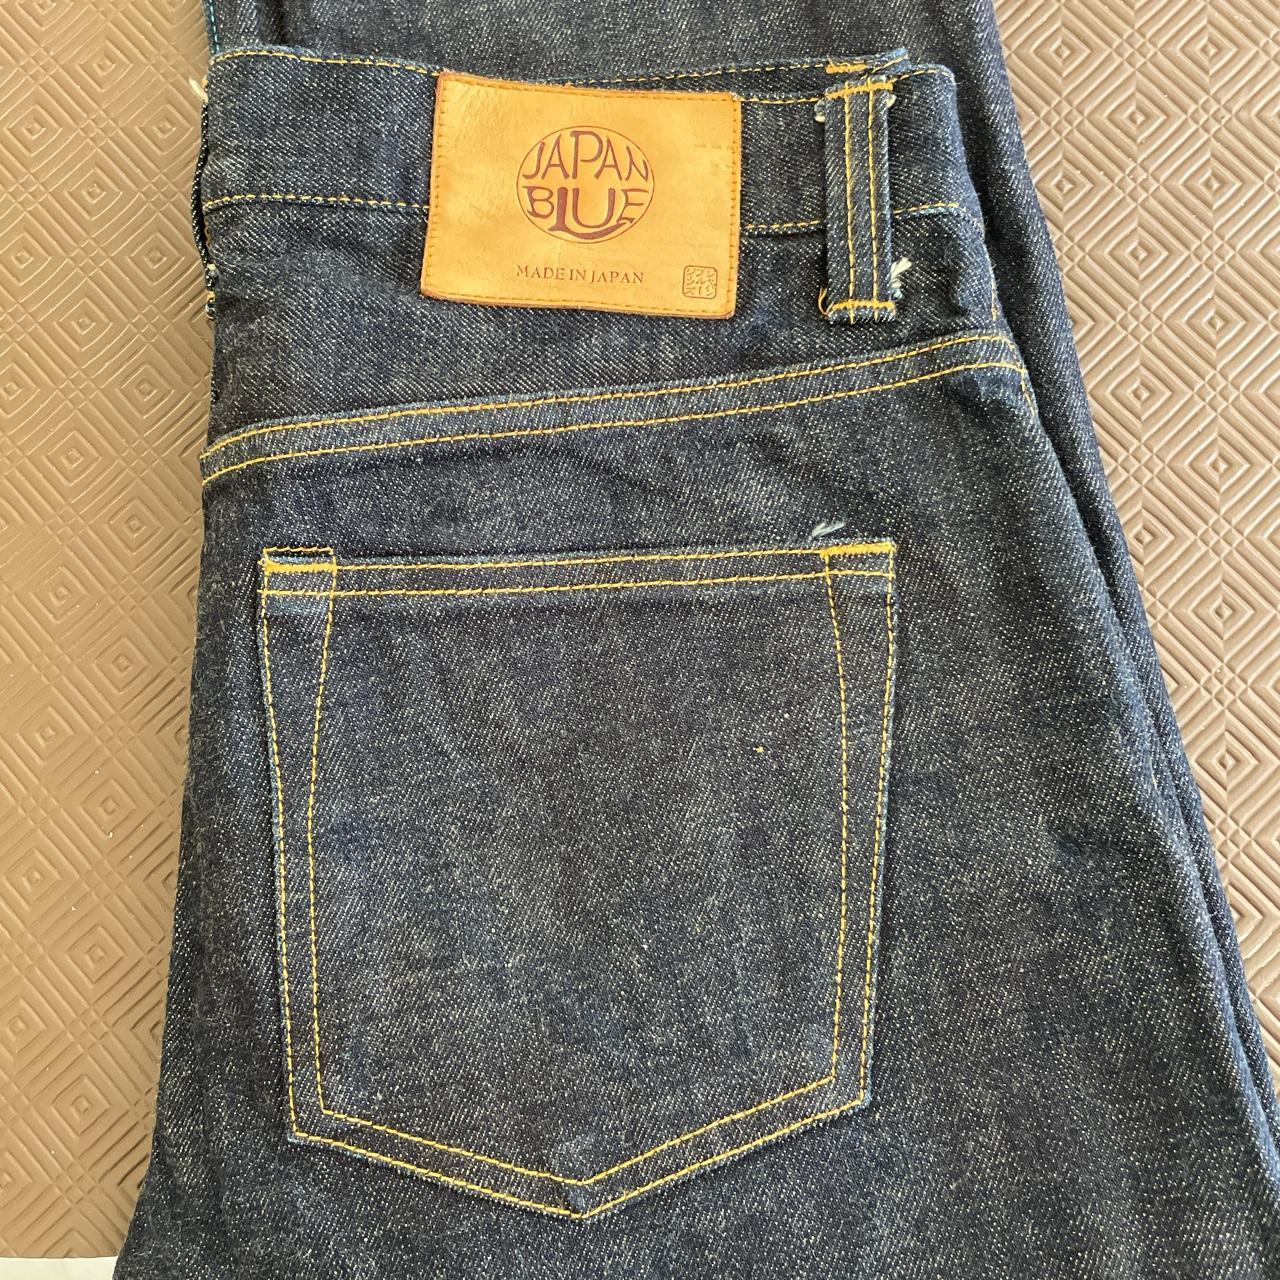 Japan Blue Made in Japan denim jeans JB0404 12,5oz... - Depop